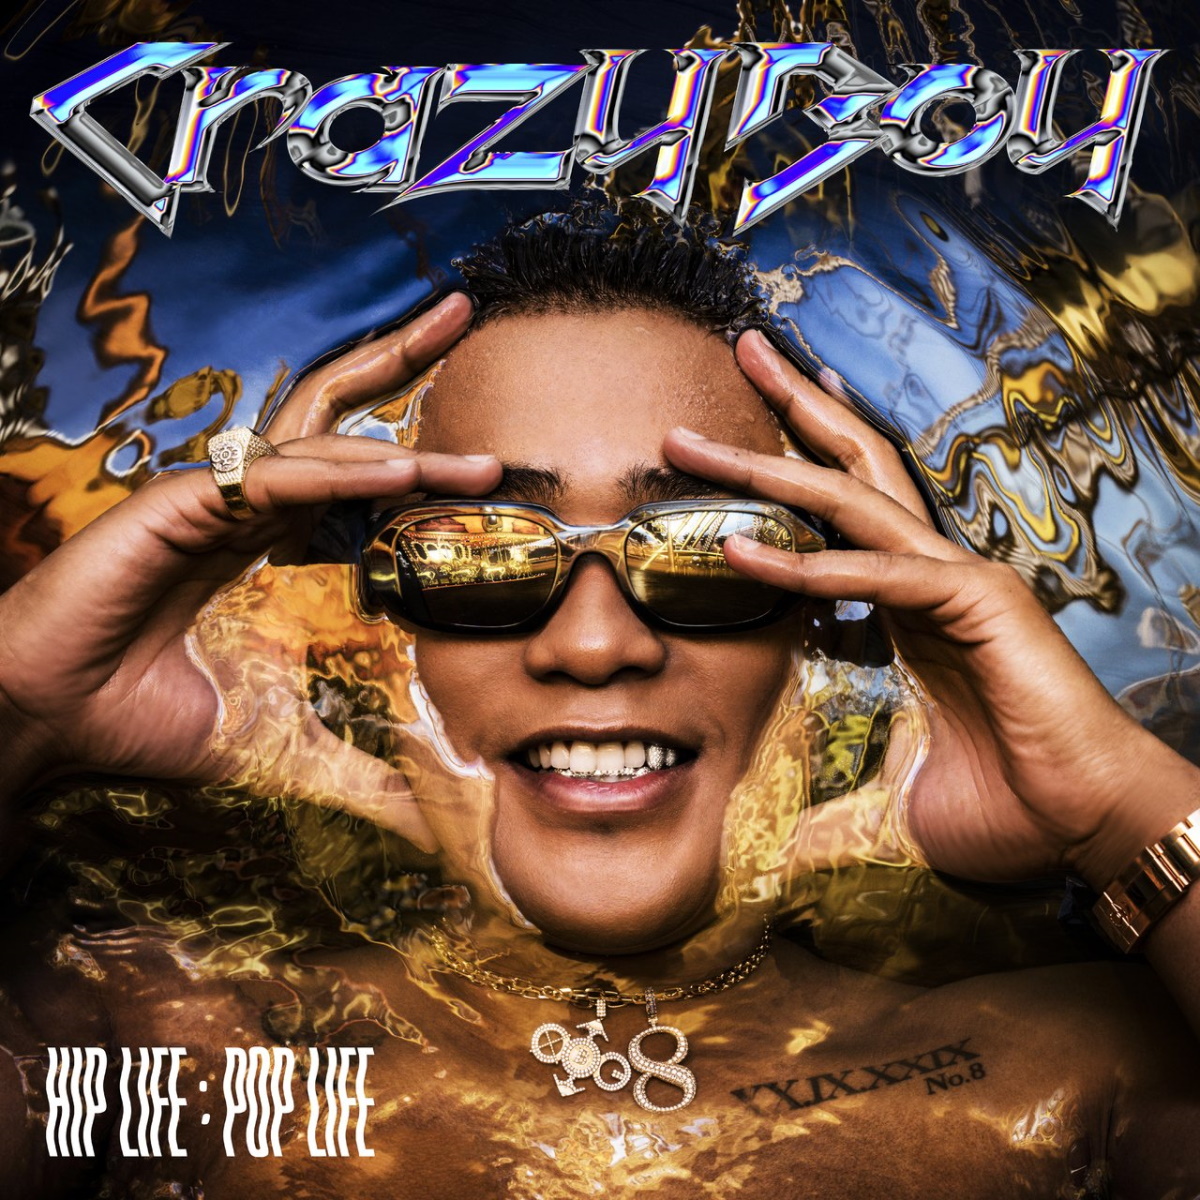 『CrazyBoy - DoCoDeMo DooR Remix (feat. JP THE WAVY)』収録の『HIP LIFE：POP LIFE』ジャケット